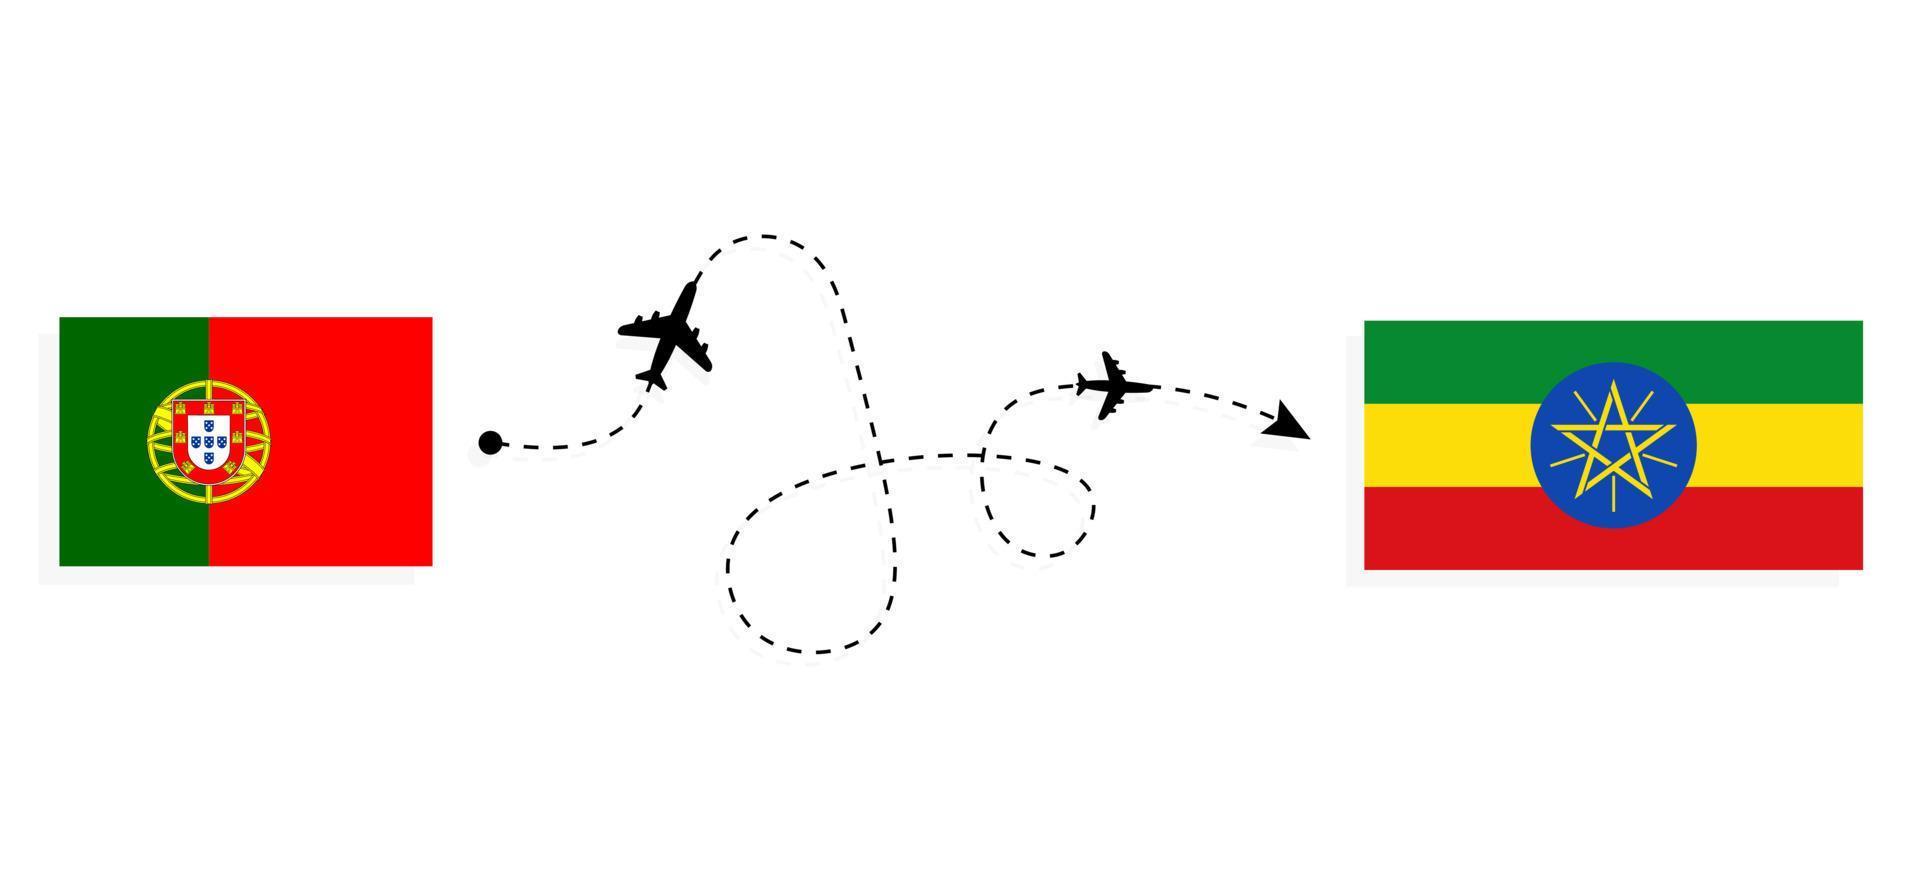 vol et voyage du portugal à l'ethiopie par concept de voyage en avion de passagers vecteur